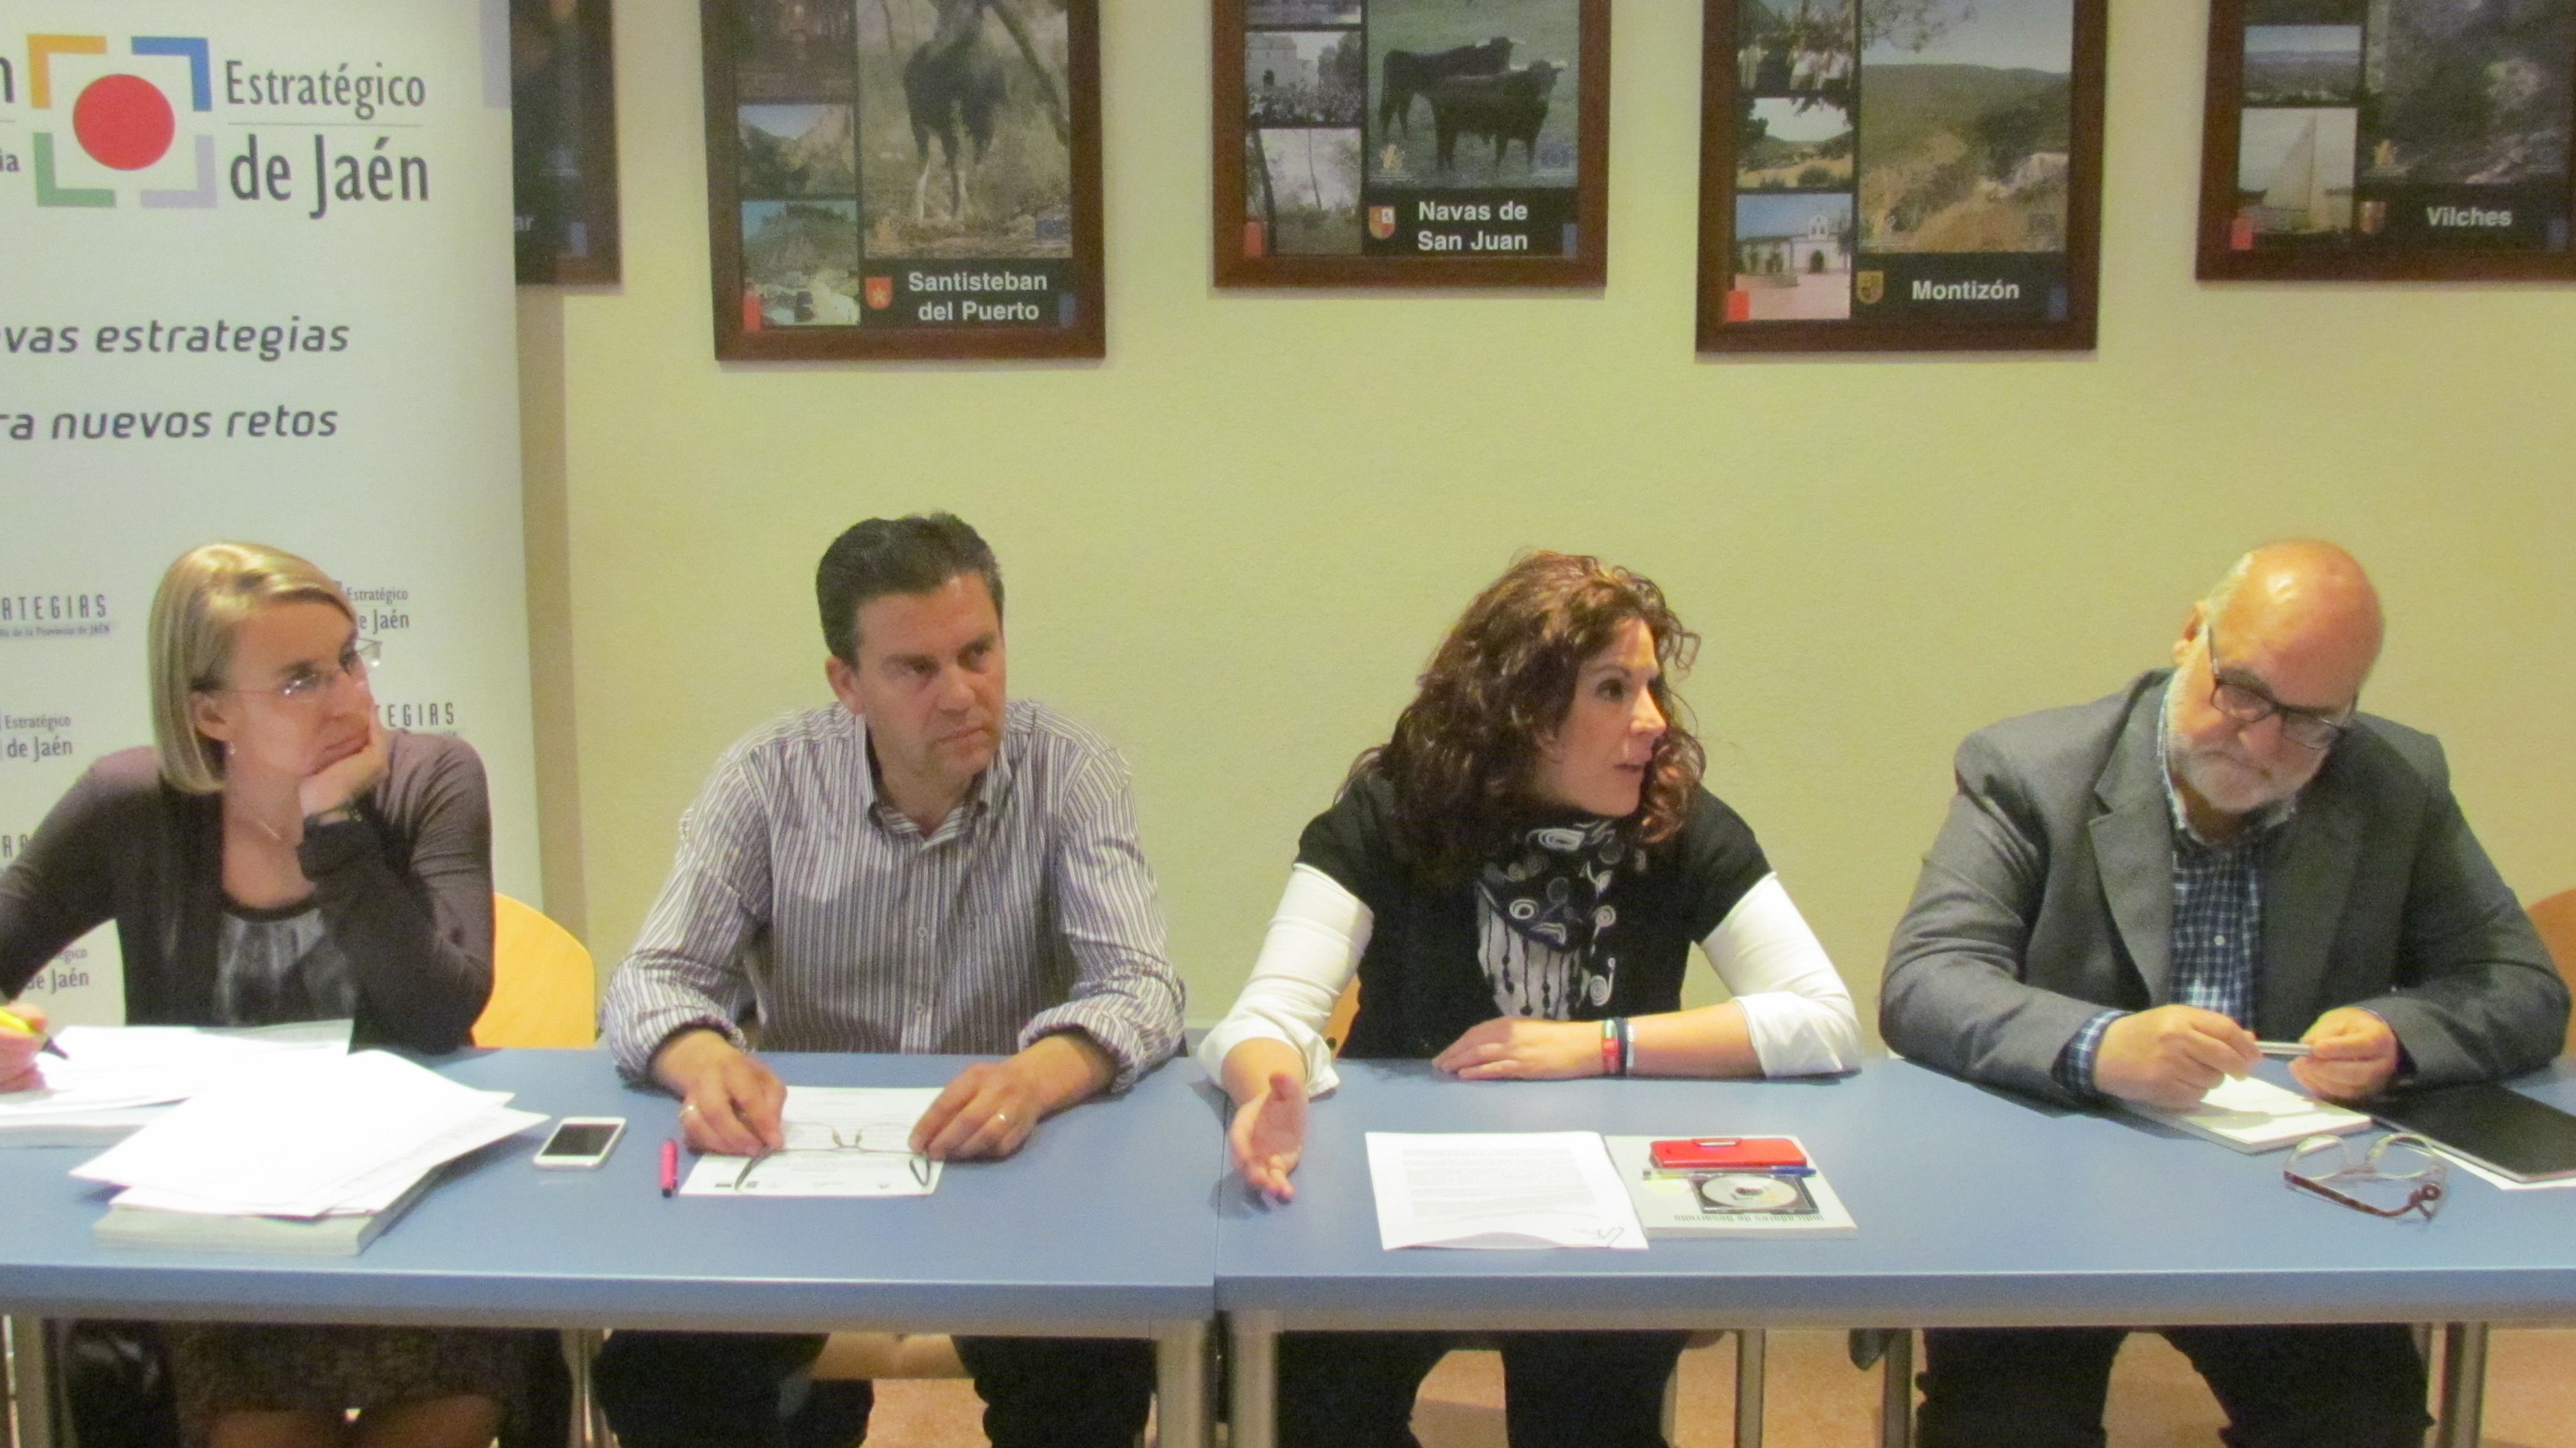 Inmaculada Herrador (Fundación), Santiago Rodríguez (ASODECO), Ángeles Férriz (Diputación) y Sebastián Lozano (ASODECO)